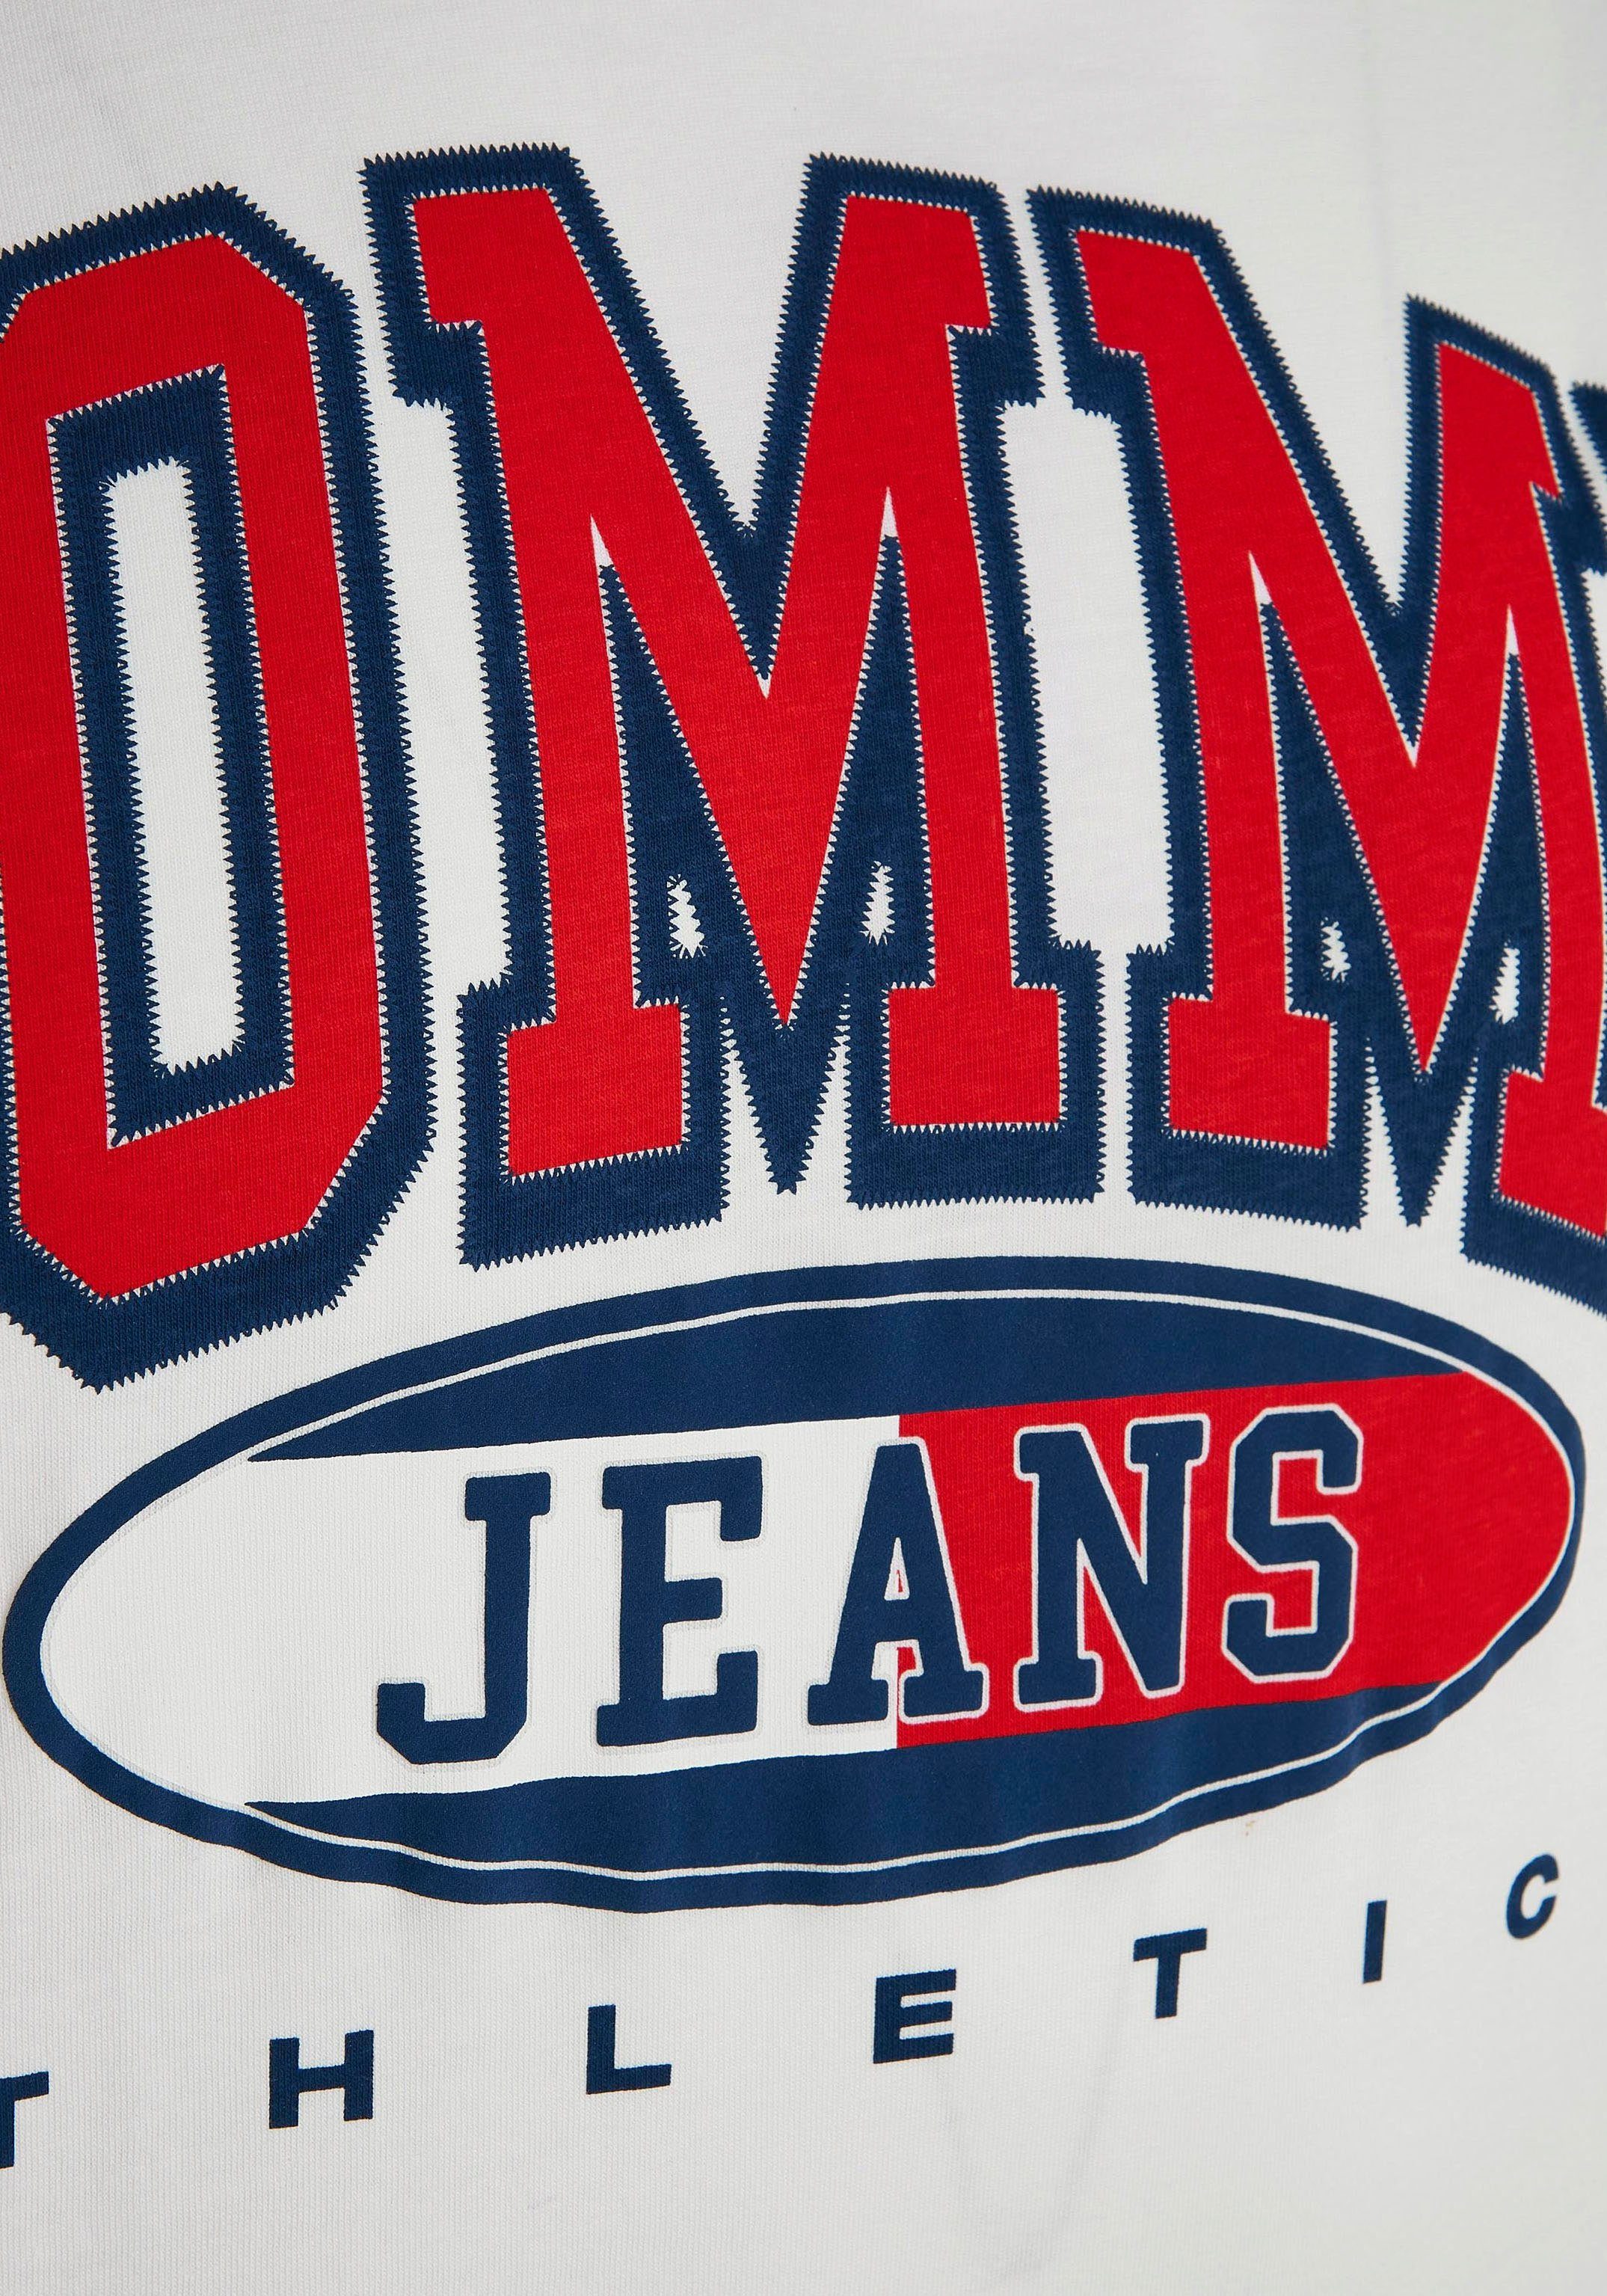 Tommy Jeans Plus der White ESSENTIAL T-Shirt Print TJM Brust TEE auf mit GRAPHIC PLUS